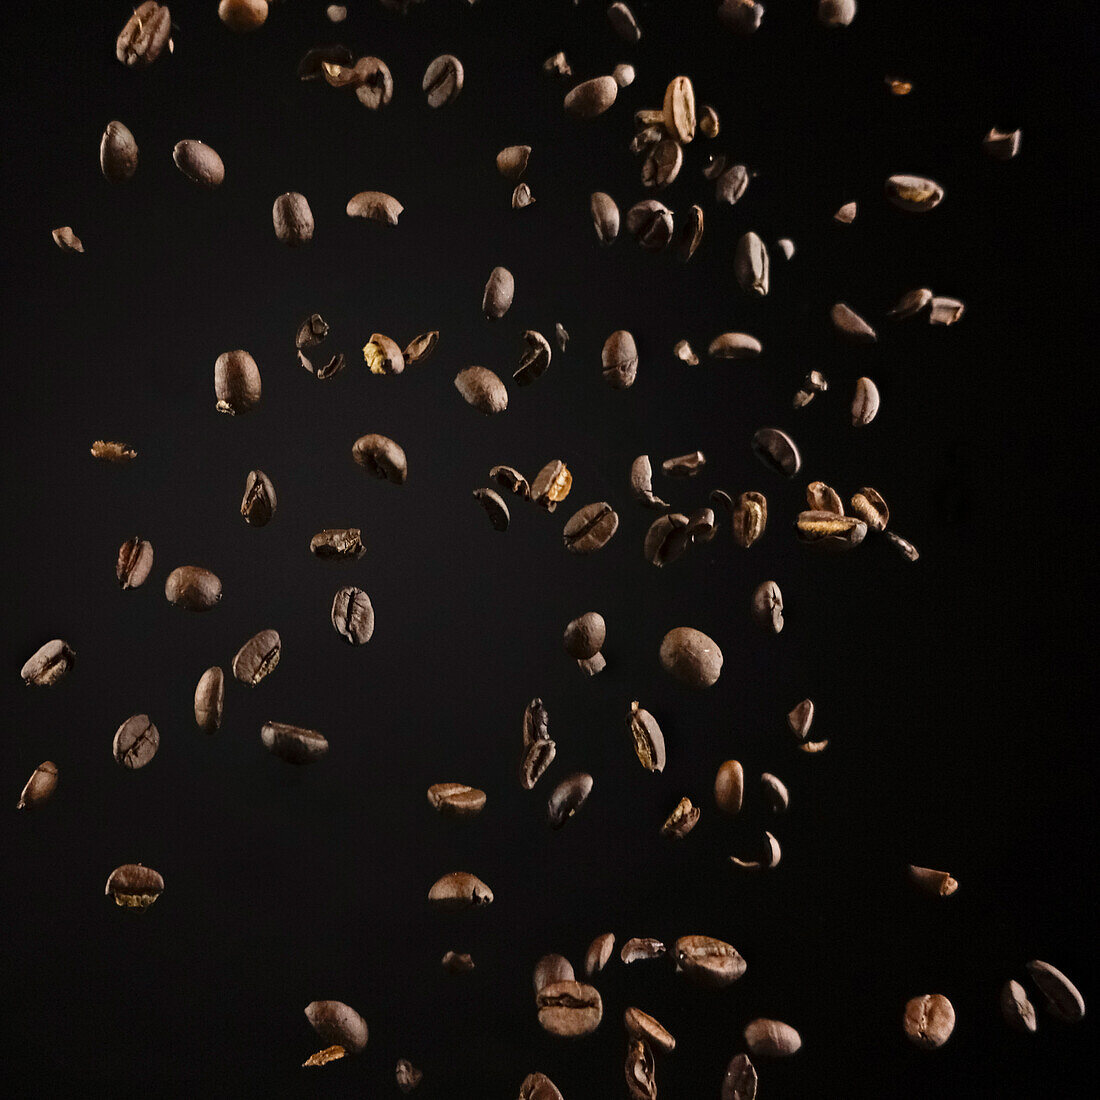 Duftende geröstete Kaffeebohnen vor dunklem Hintergrund als Konzept für eine Zutat für ein leckeres Heißgetränk